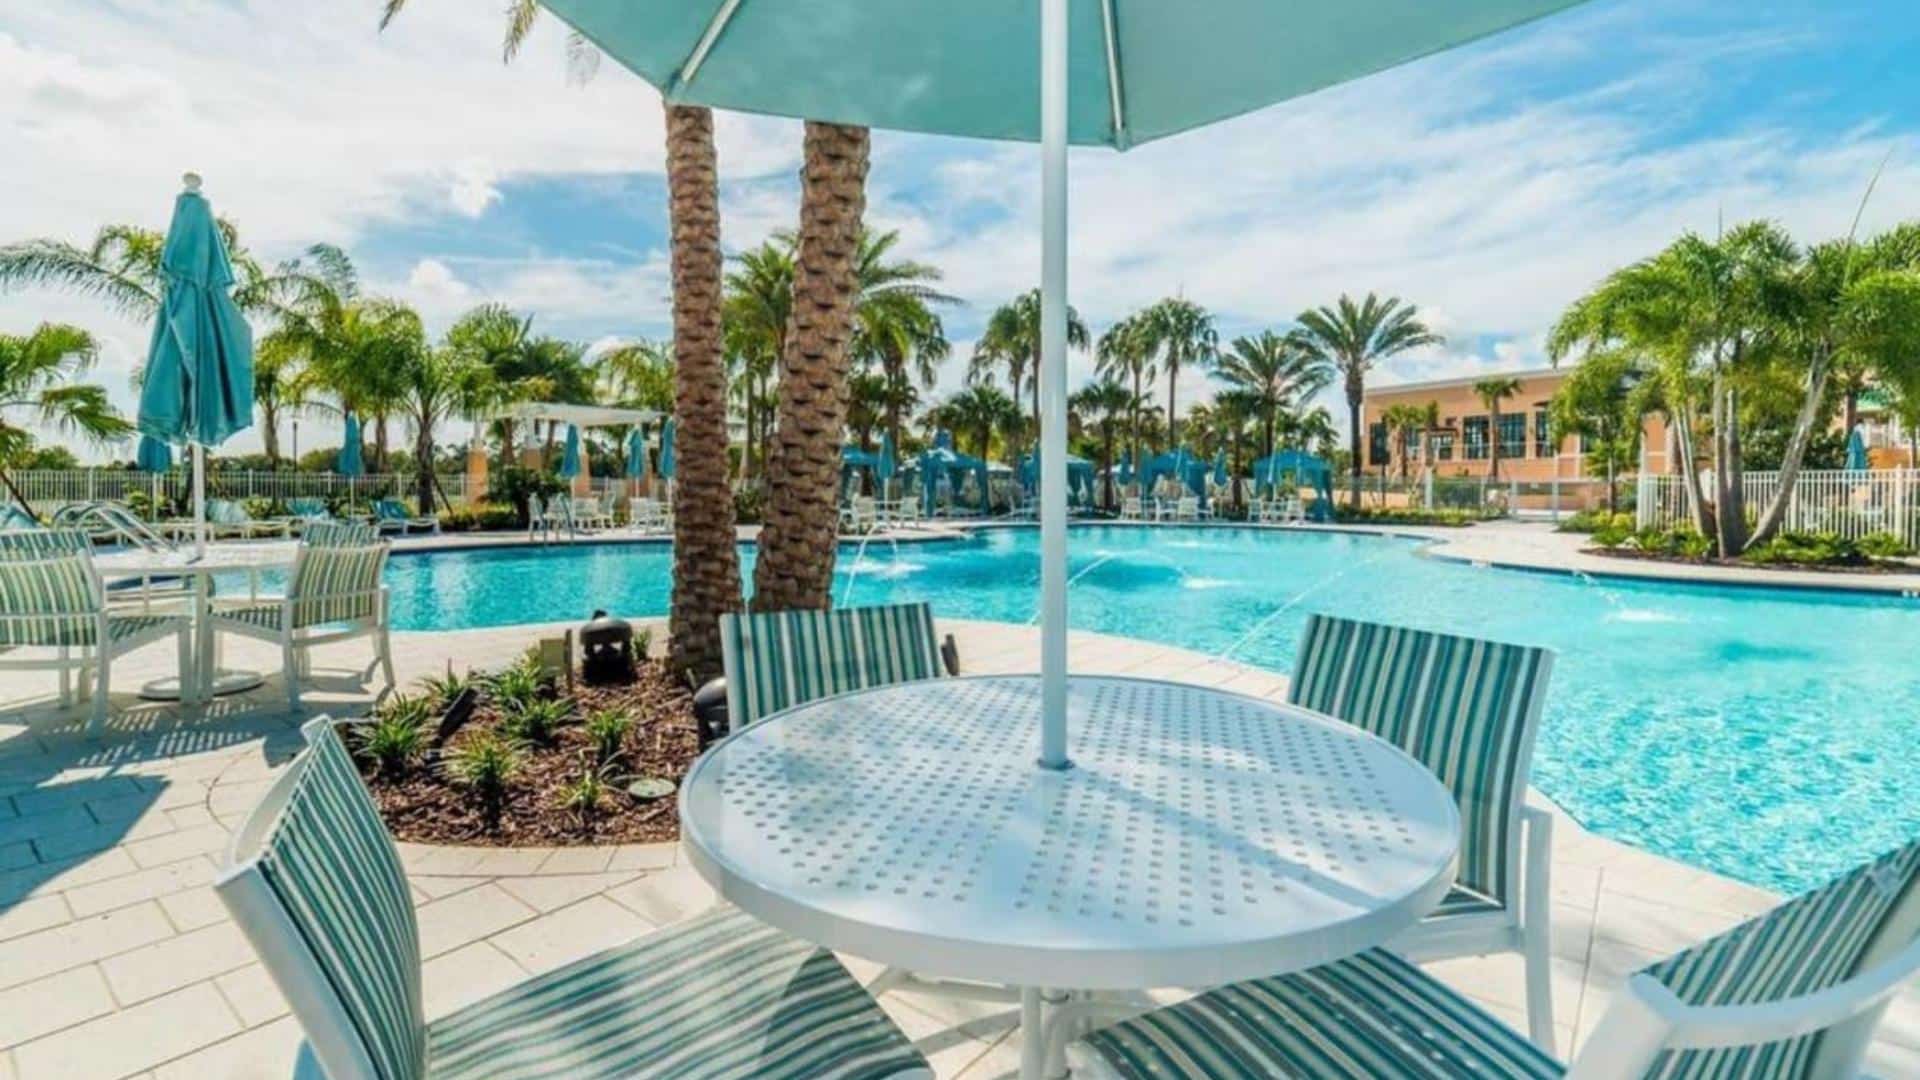 Solara Resort - Orlando Poolside Dining